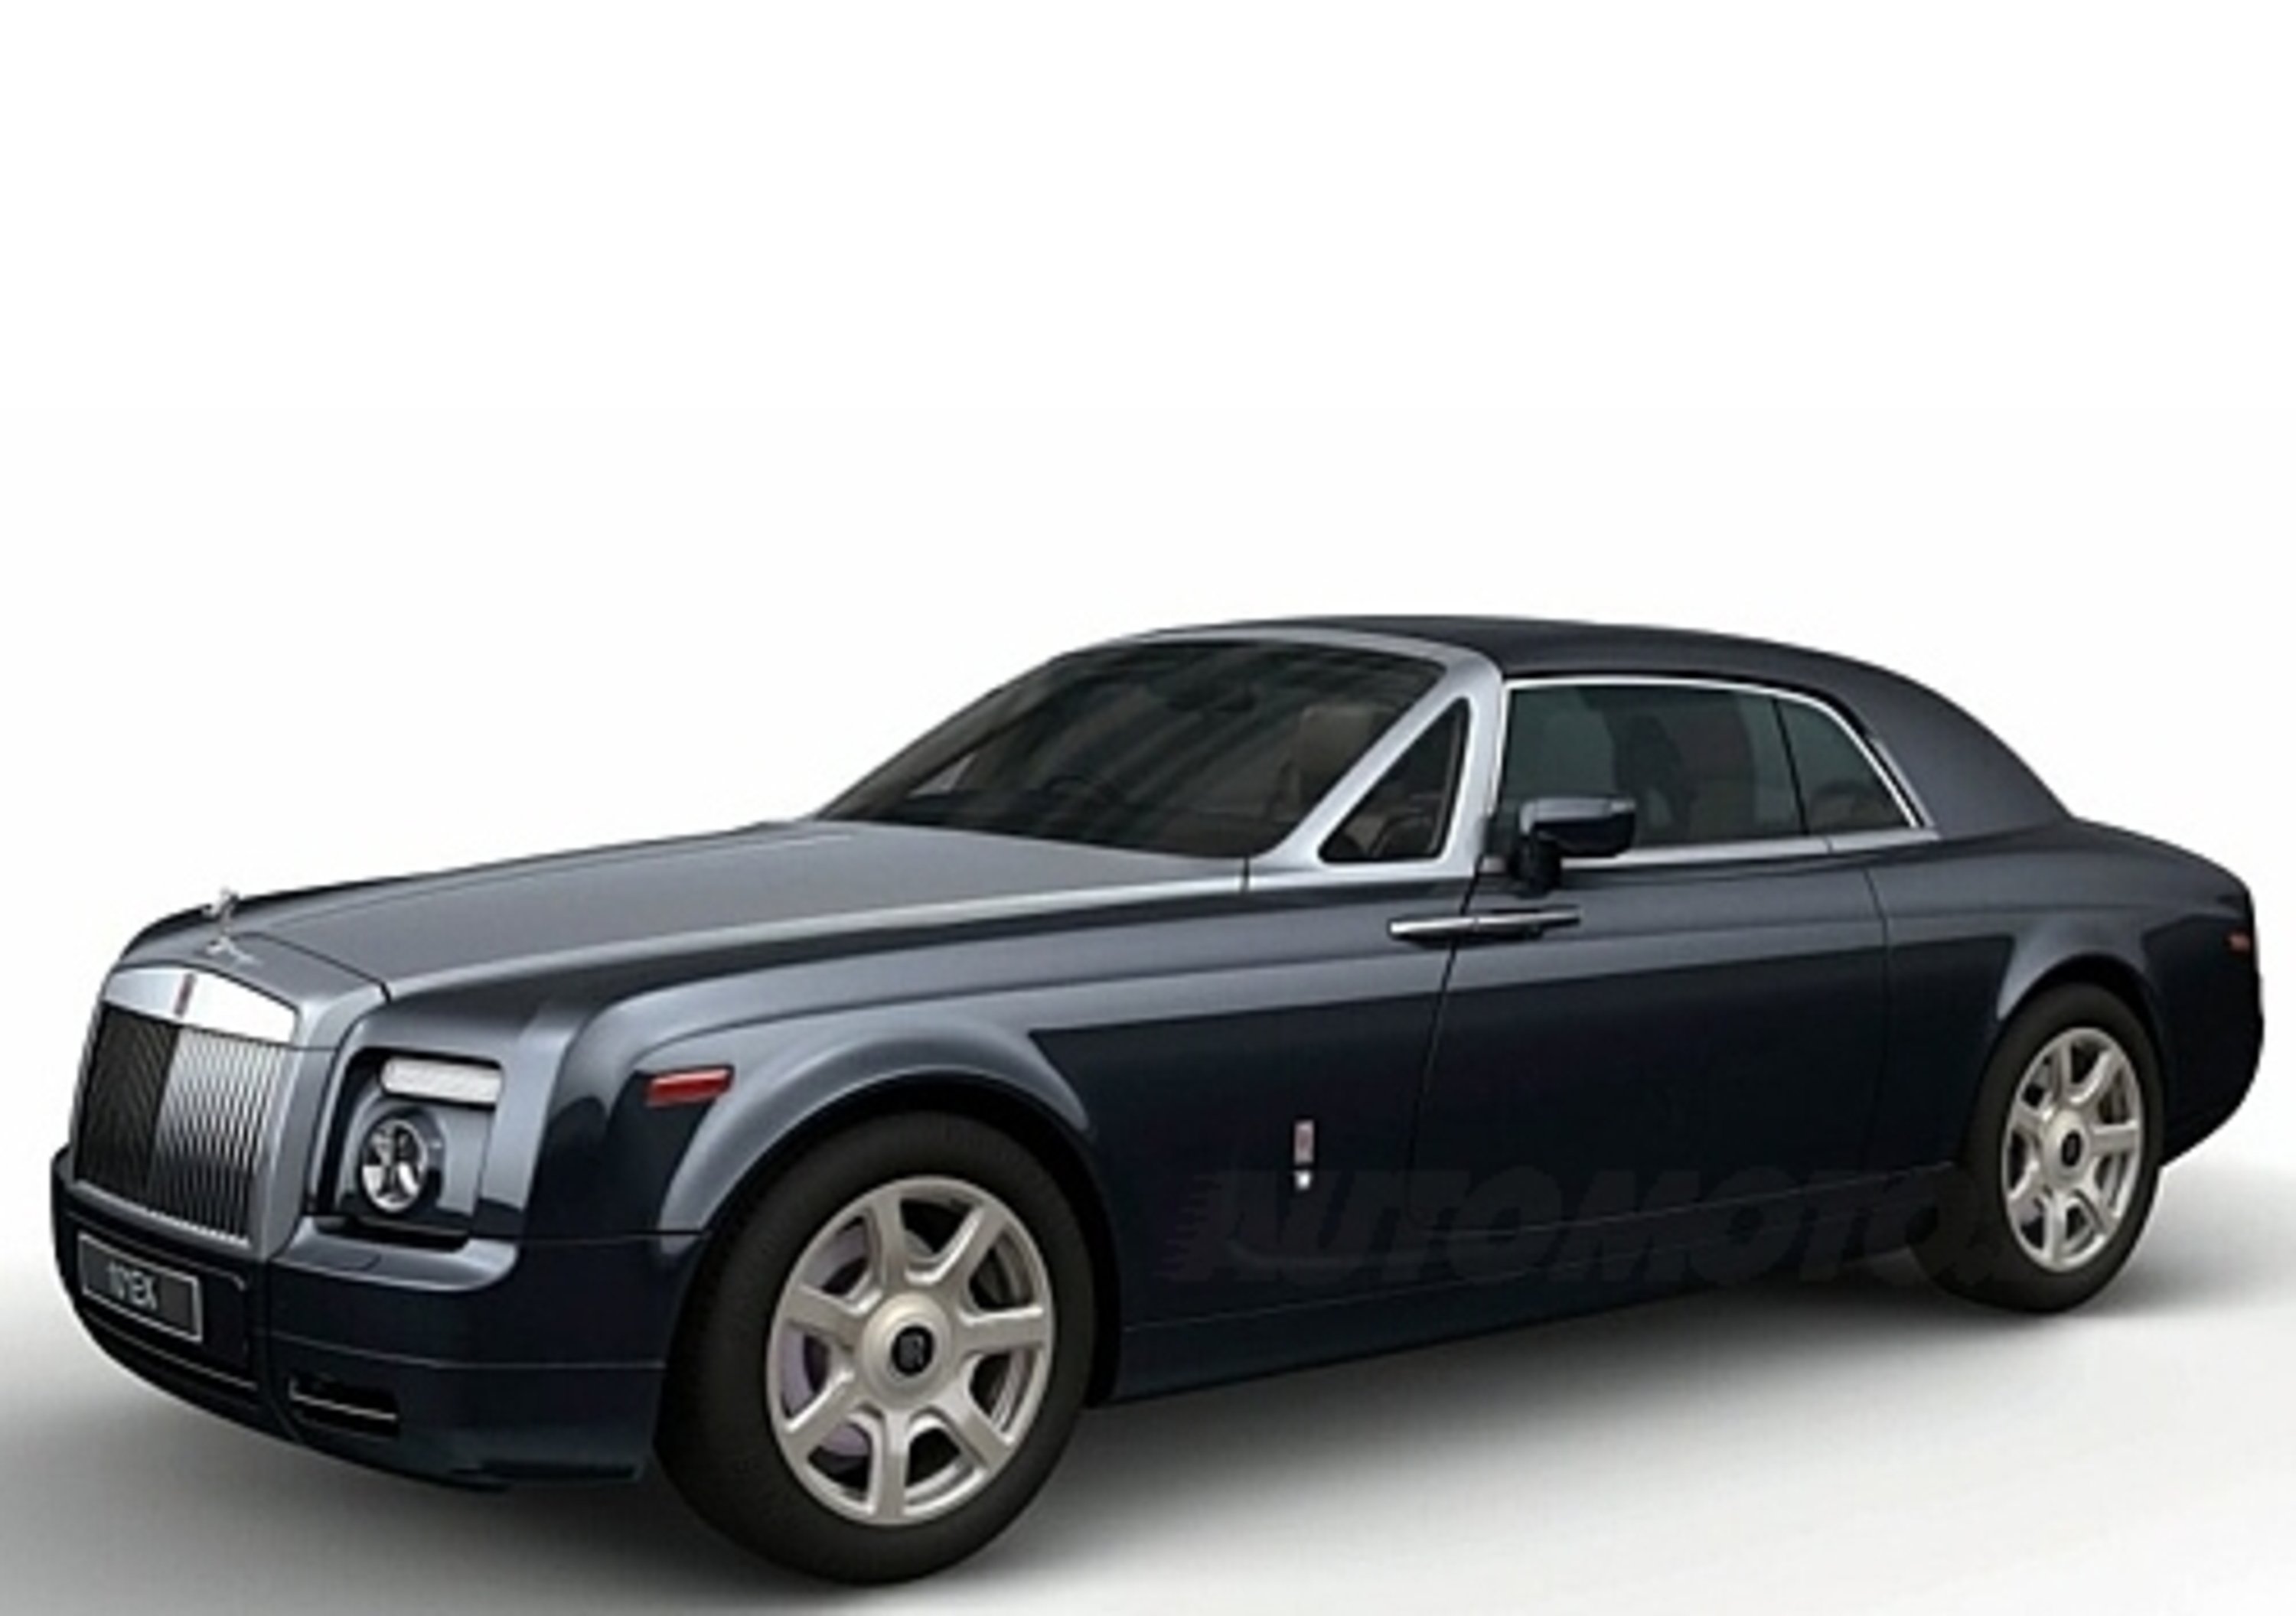 Rolls Royce 101 EX